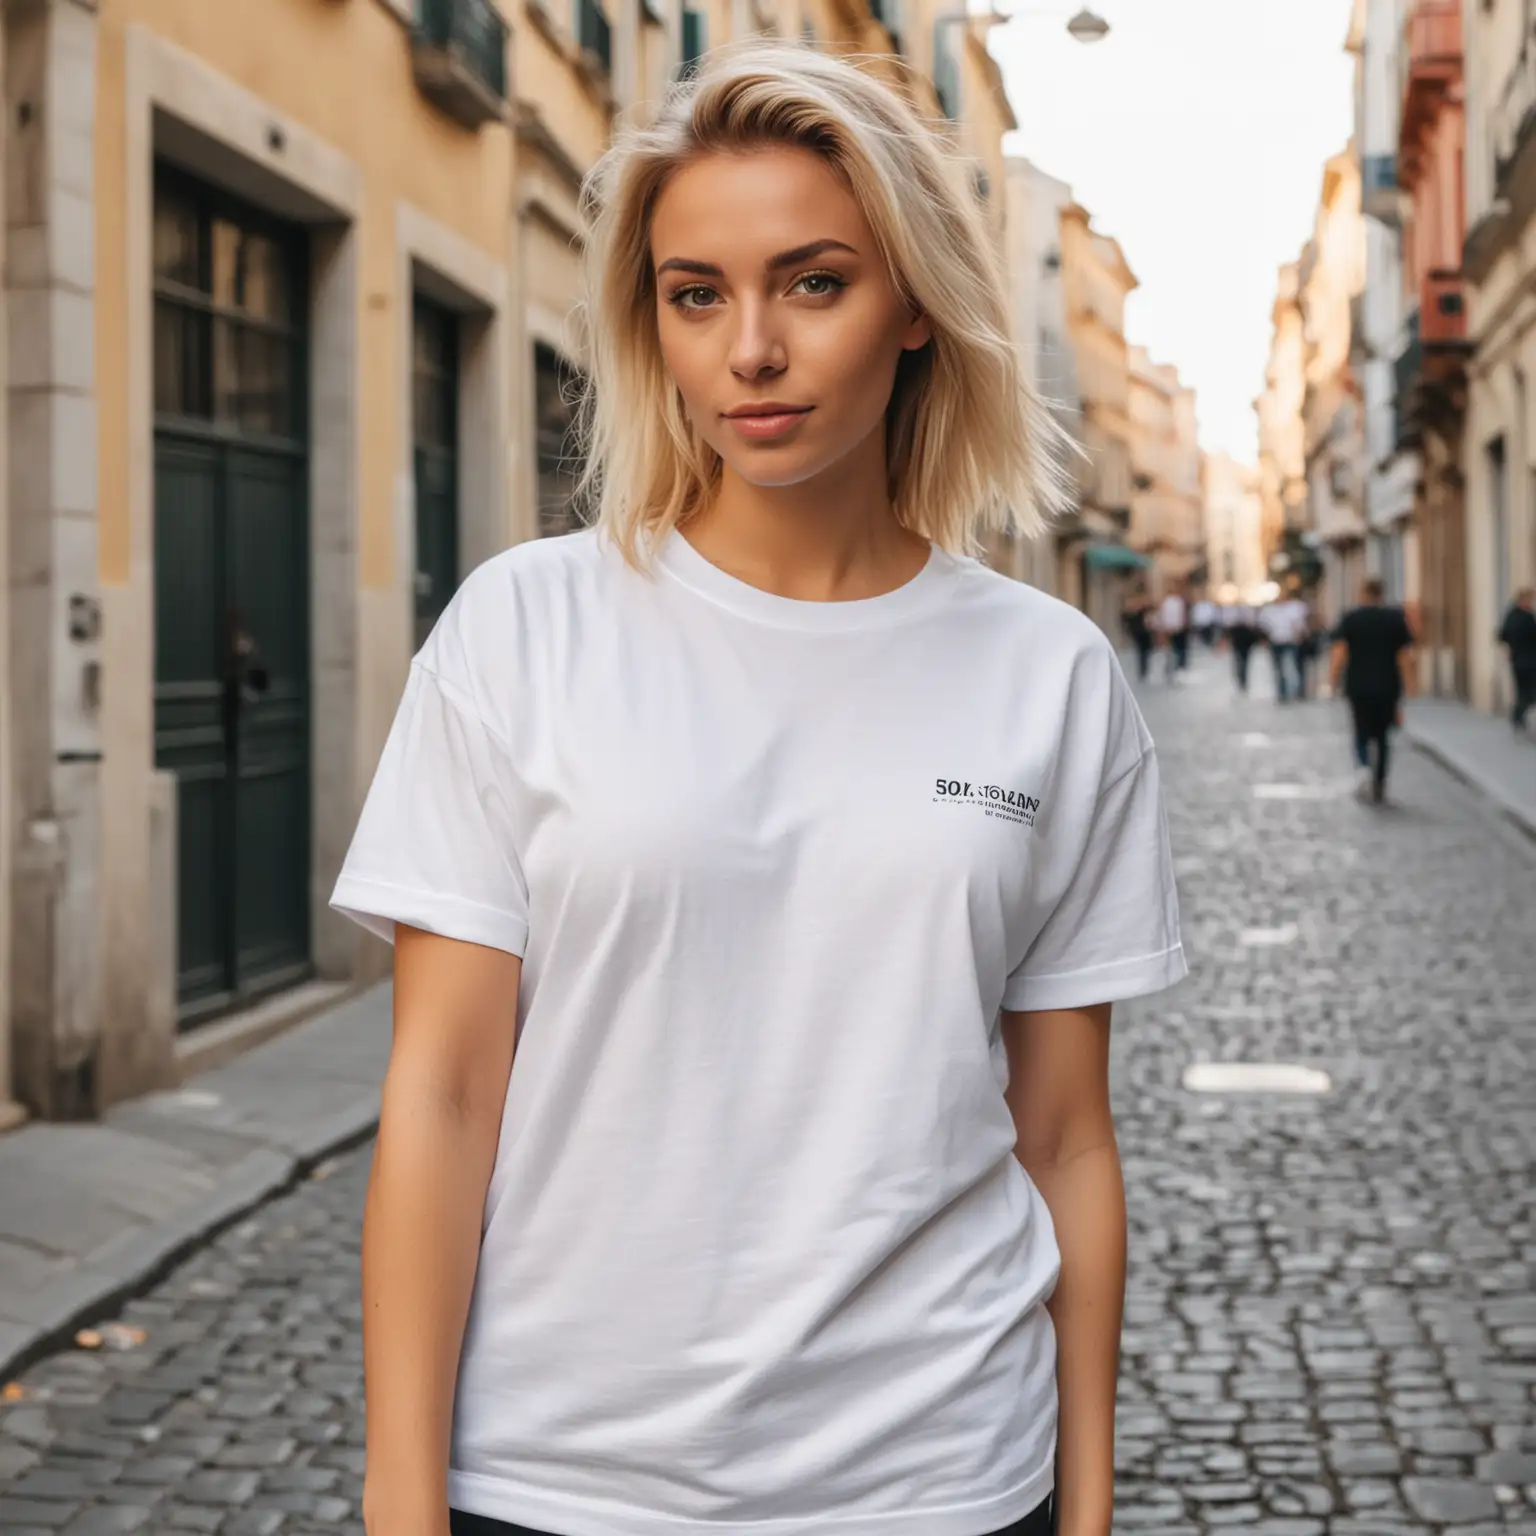 Blonde Woman in Oversized TShirt on European Street